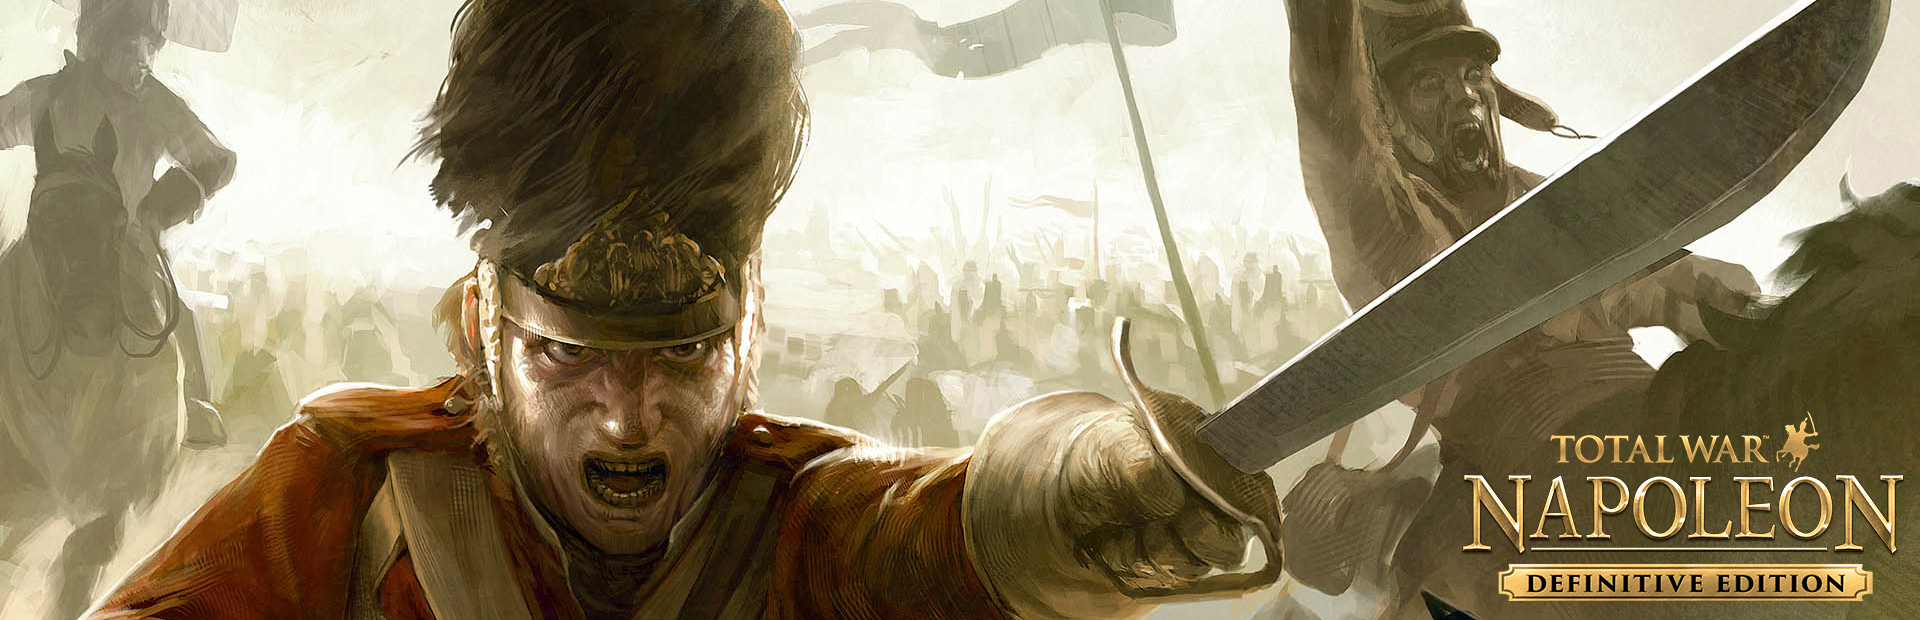 دانلود بازی Total War: NAPOLEON برای PC | گیمباتو